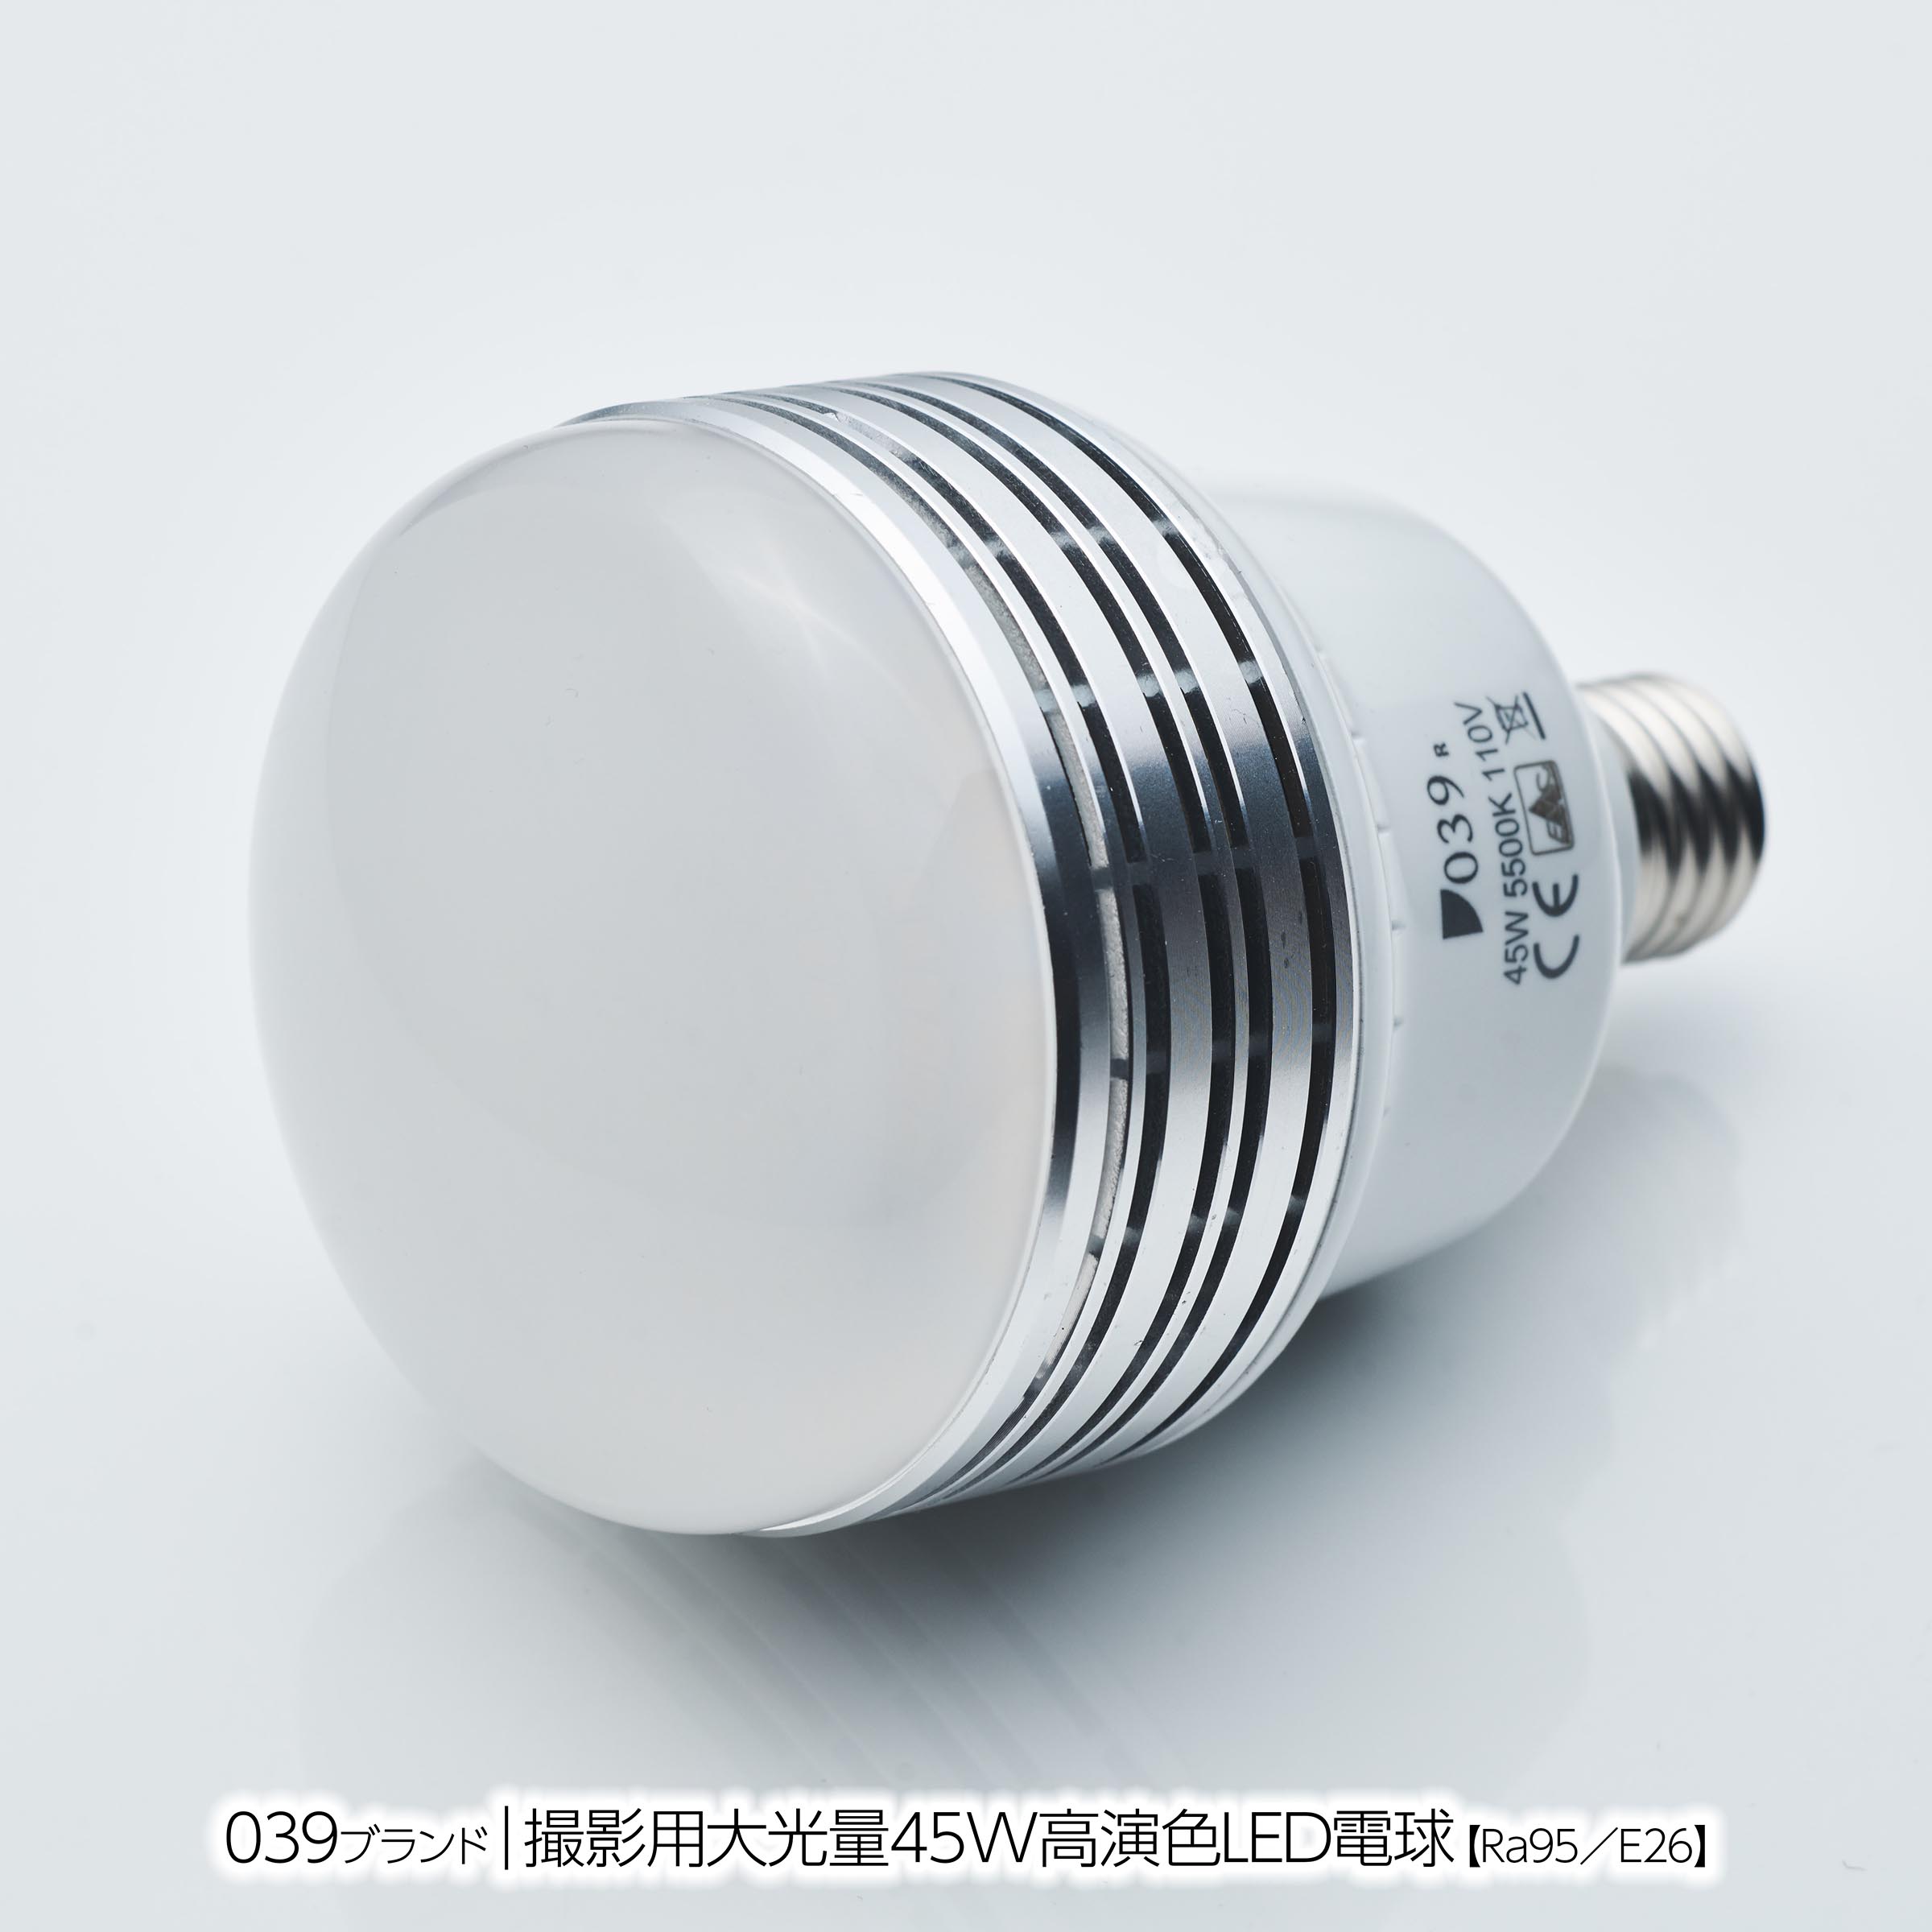 600Wフォトランプ（アイランプ）と「45W高演色LED電球」の比較 | 使える機材 Blog！